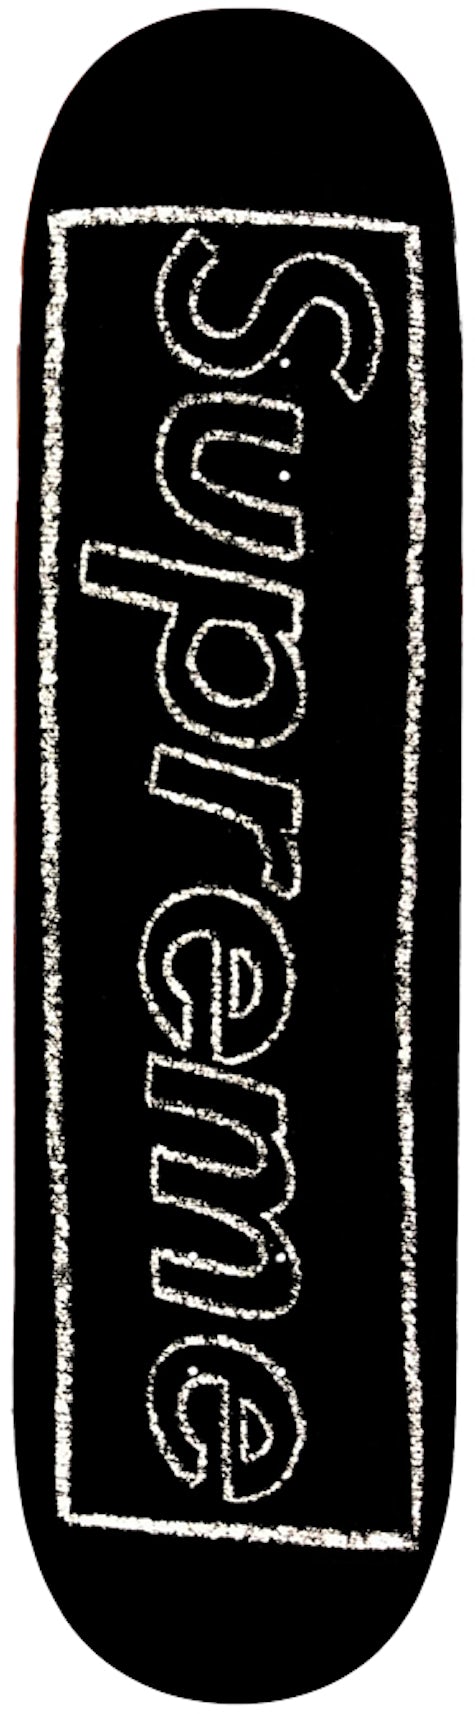 Supreme x KAWS Chalk Logo 5-Panel Black